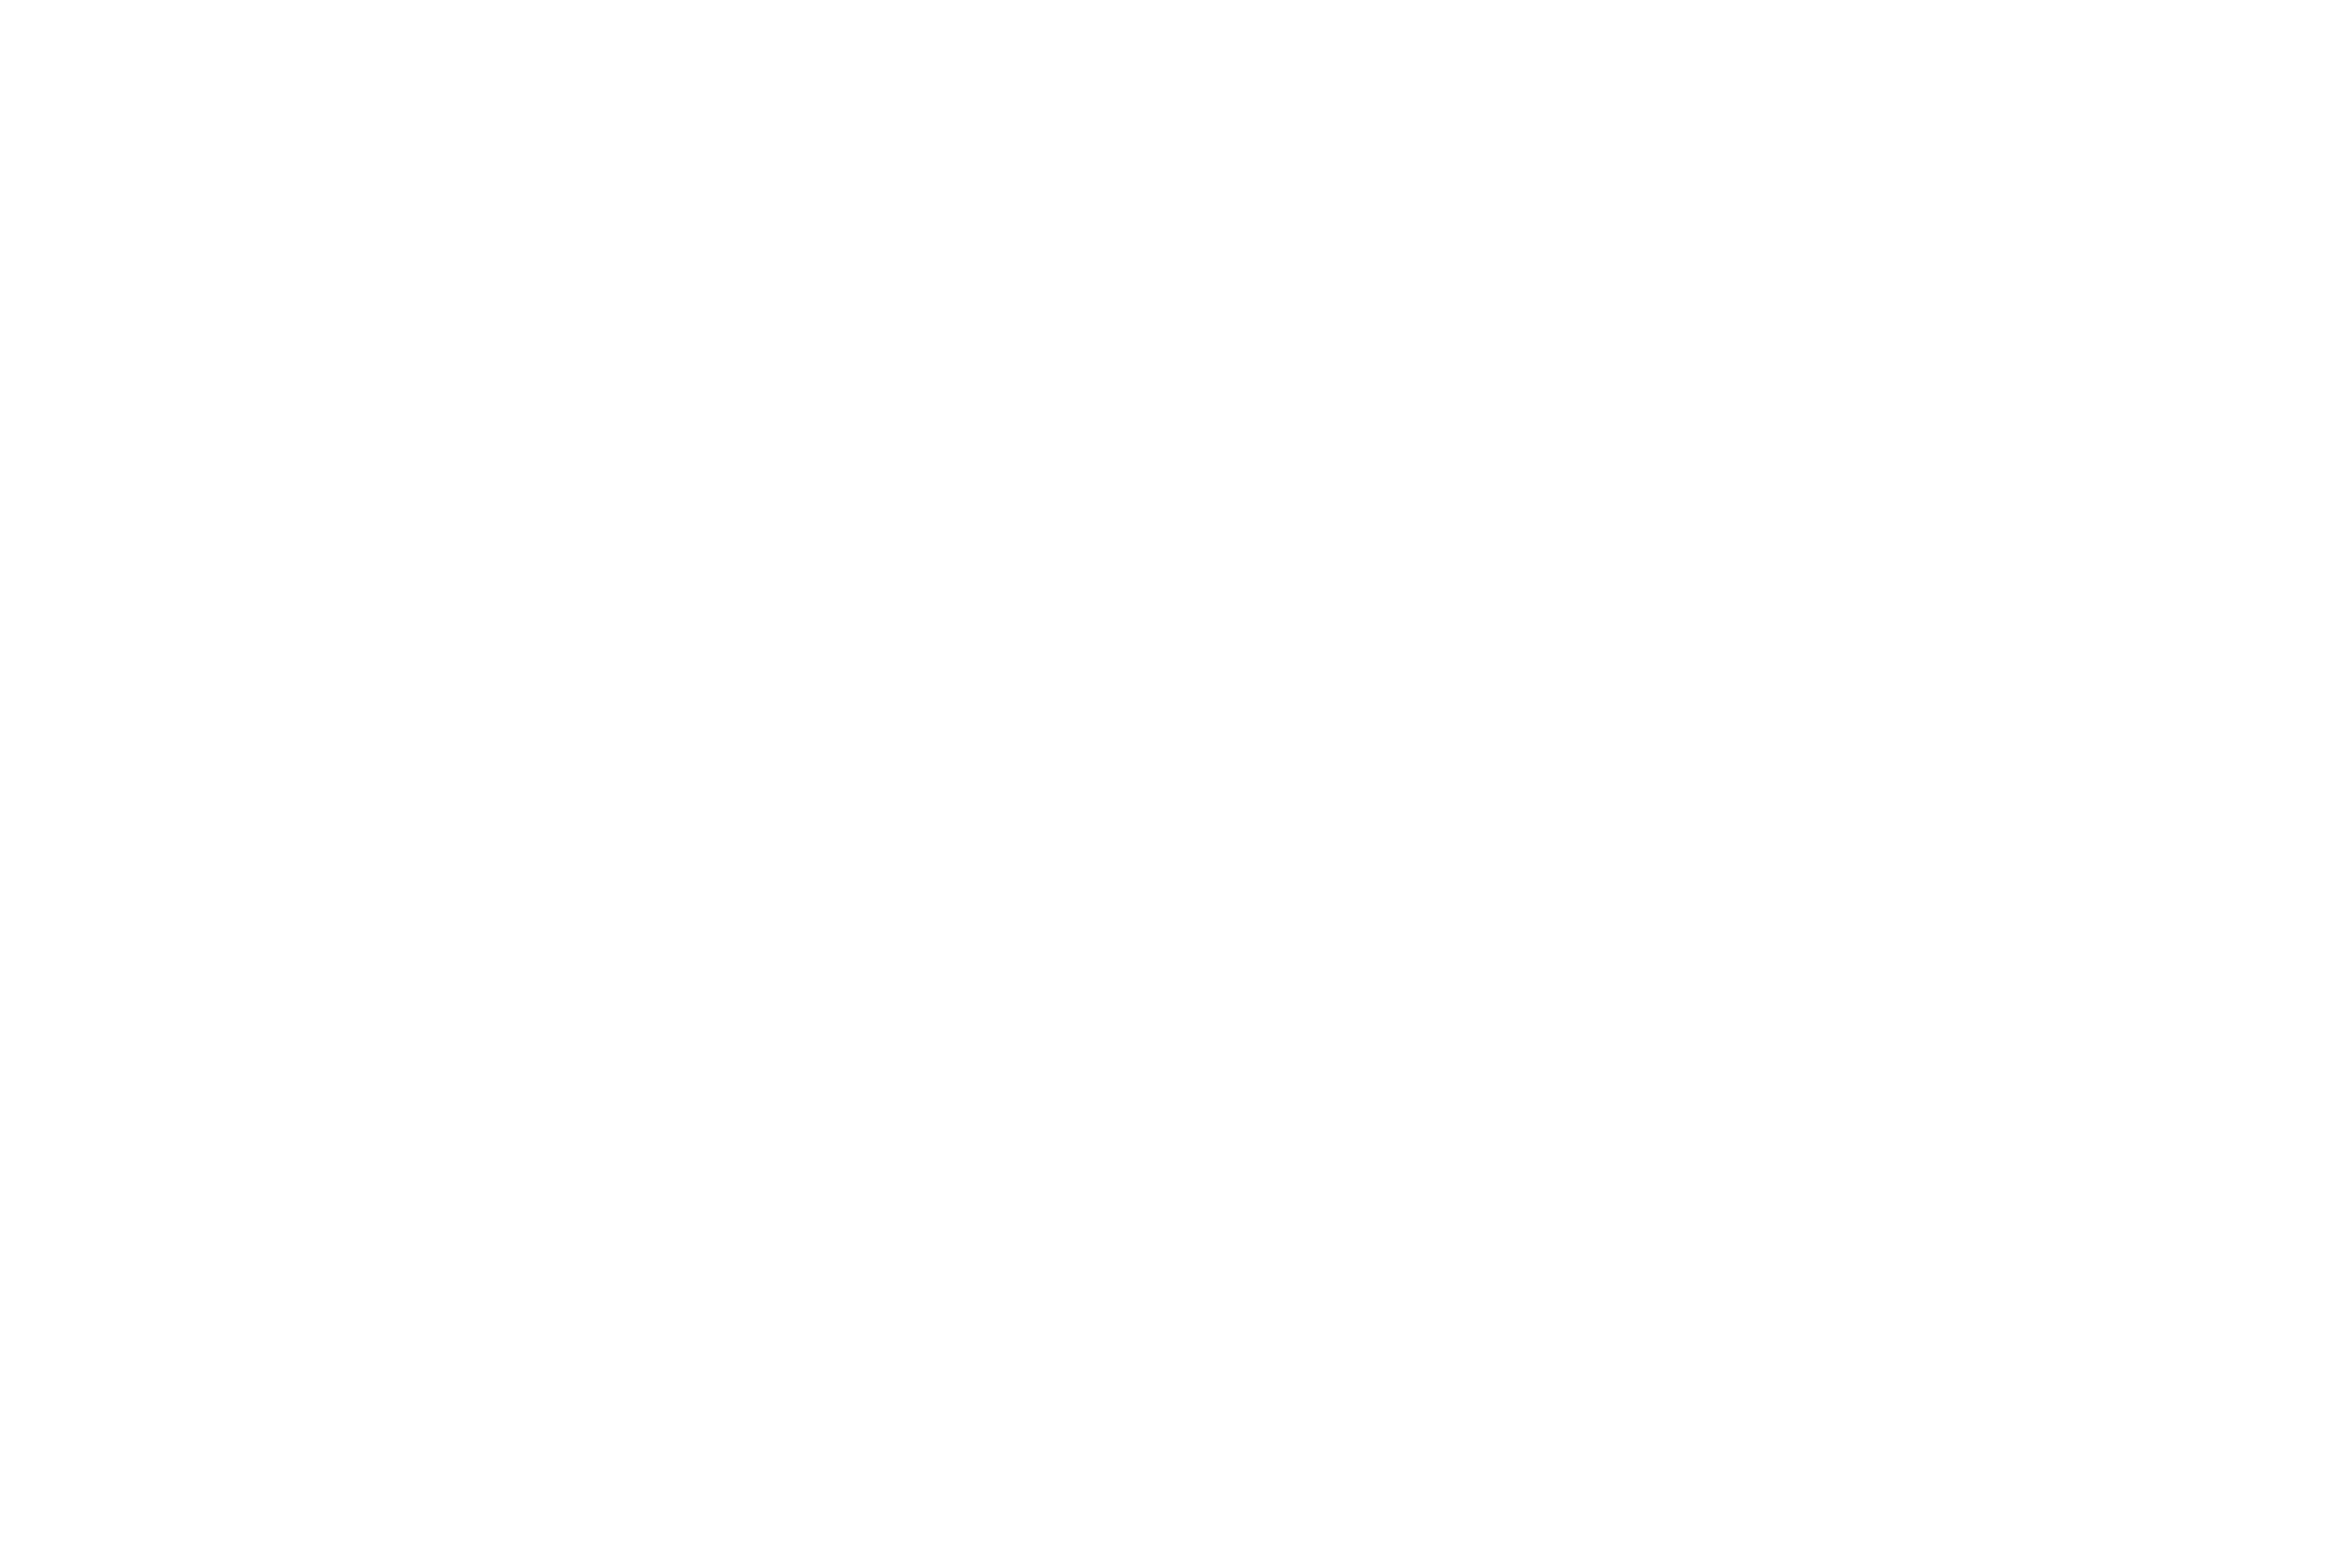 Alcove Market